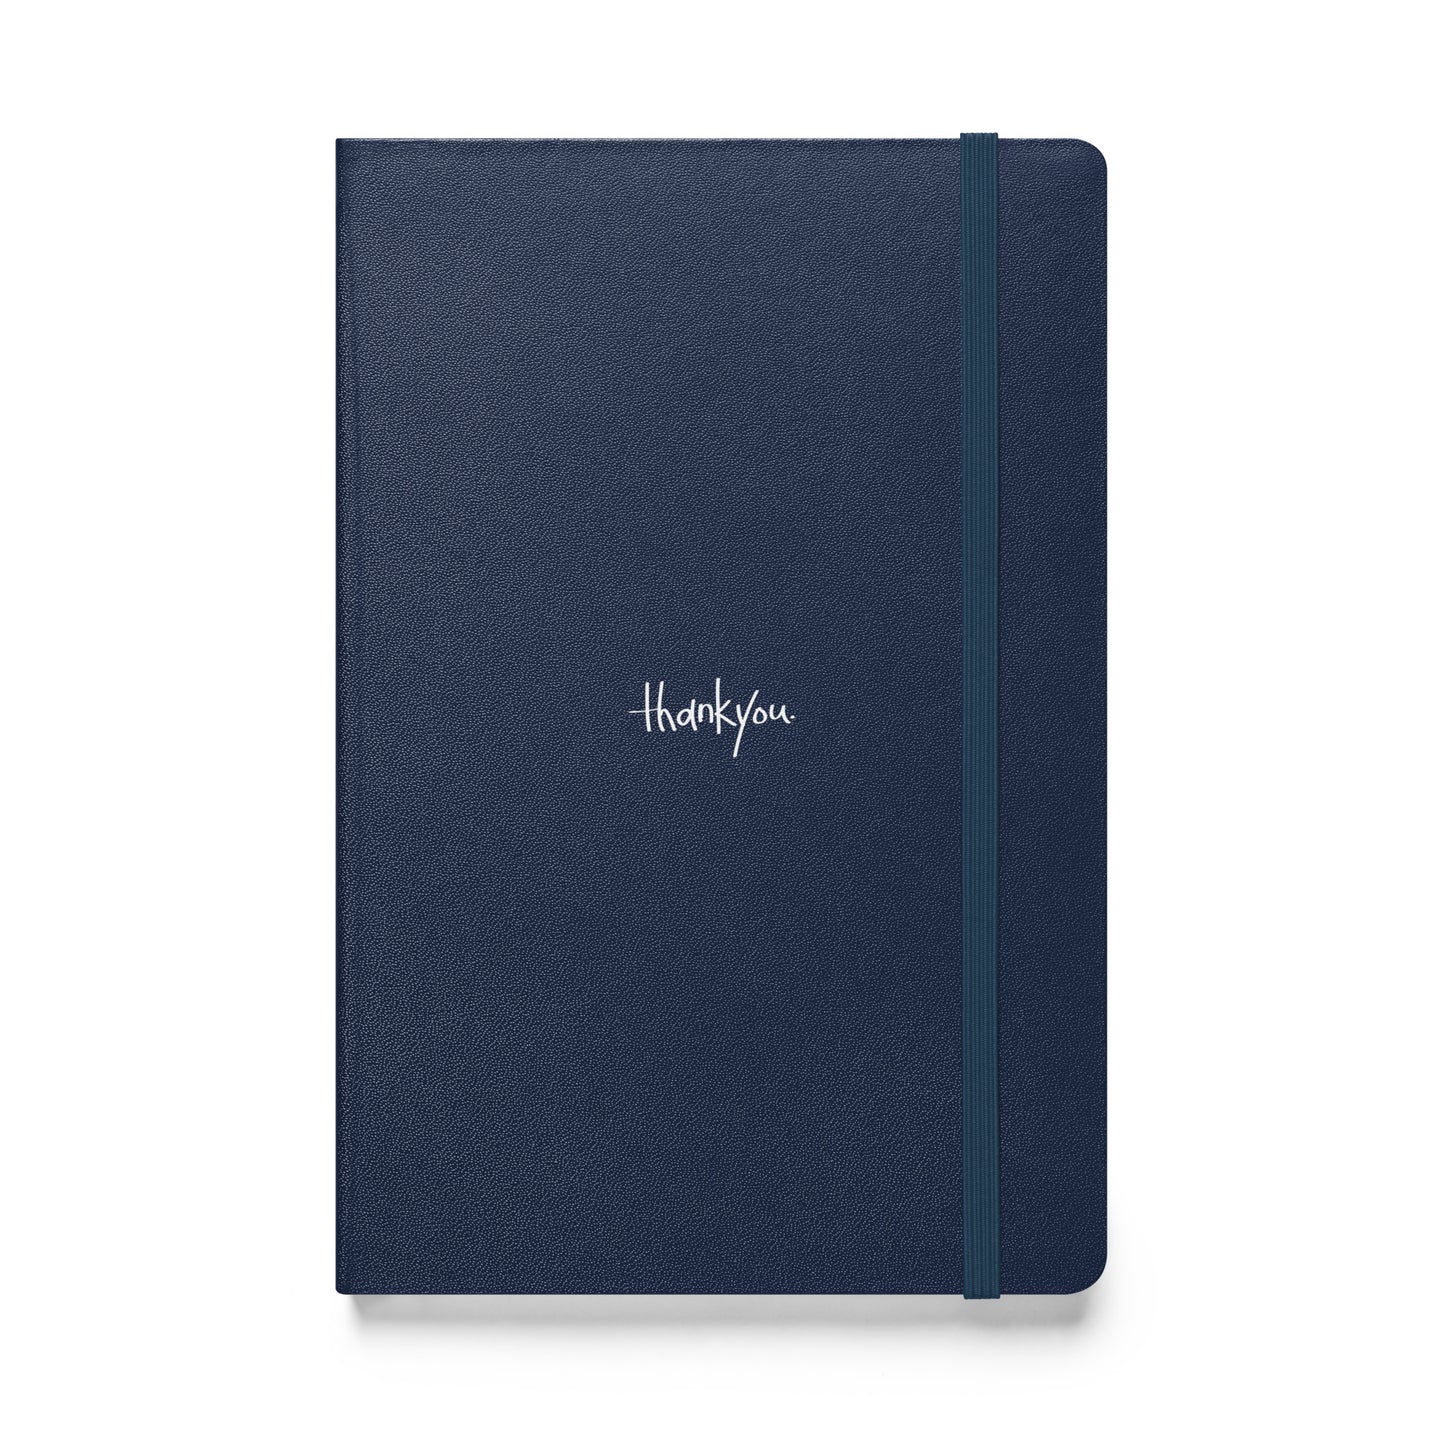 The Thankyou Notebook